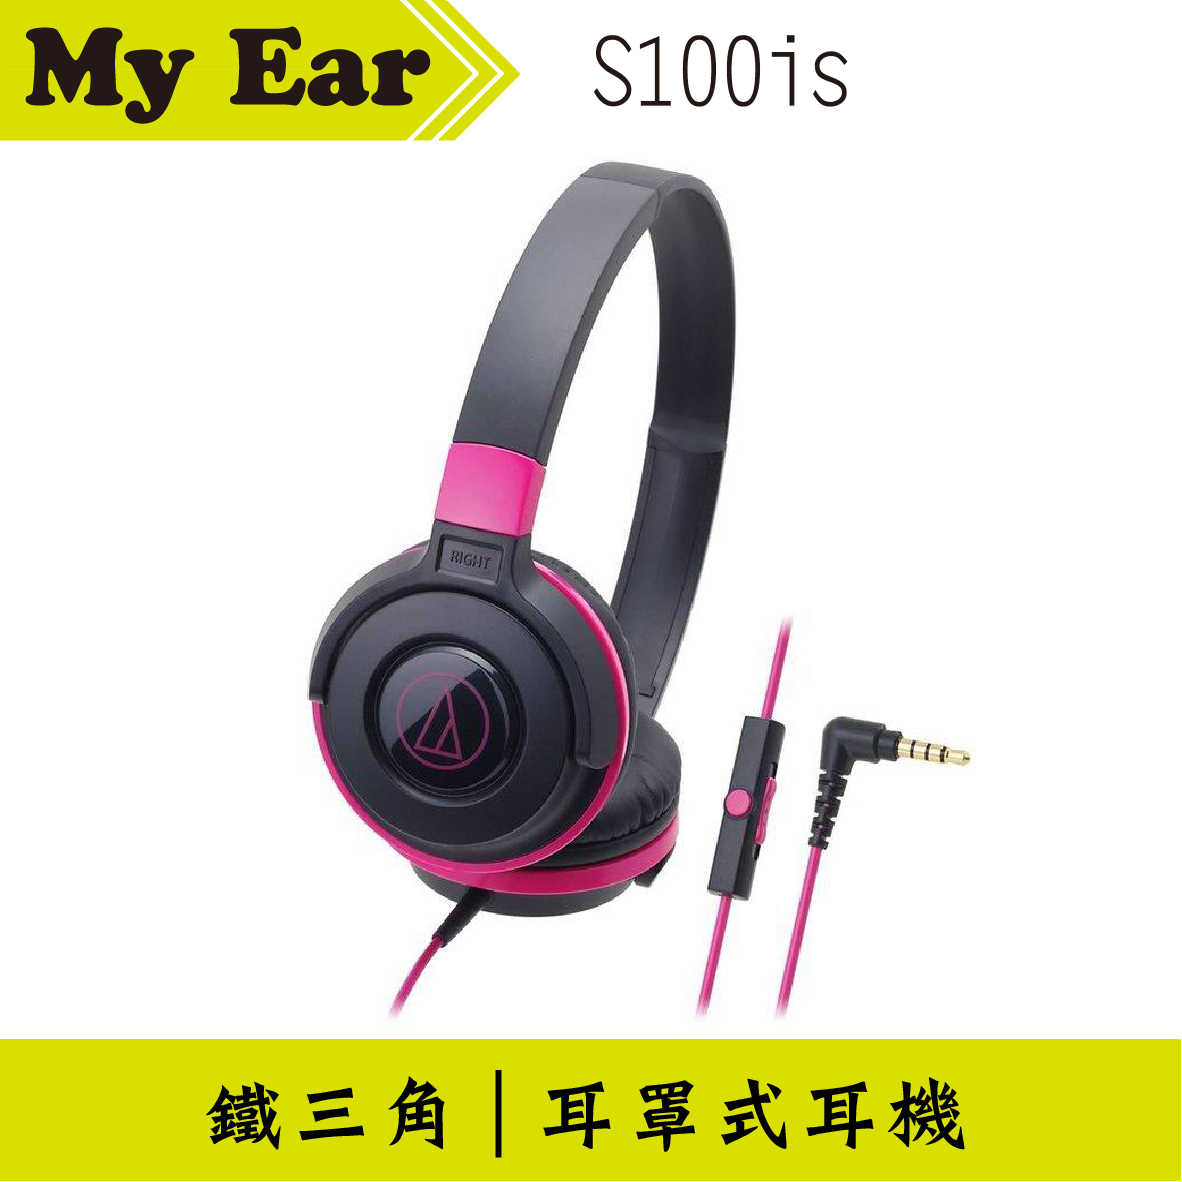 鐵三角 ATH-S100is 線控耳罩式耳機 黑粉 | My Ear 耳機專門店